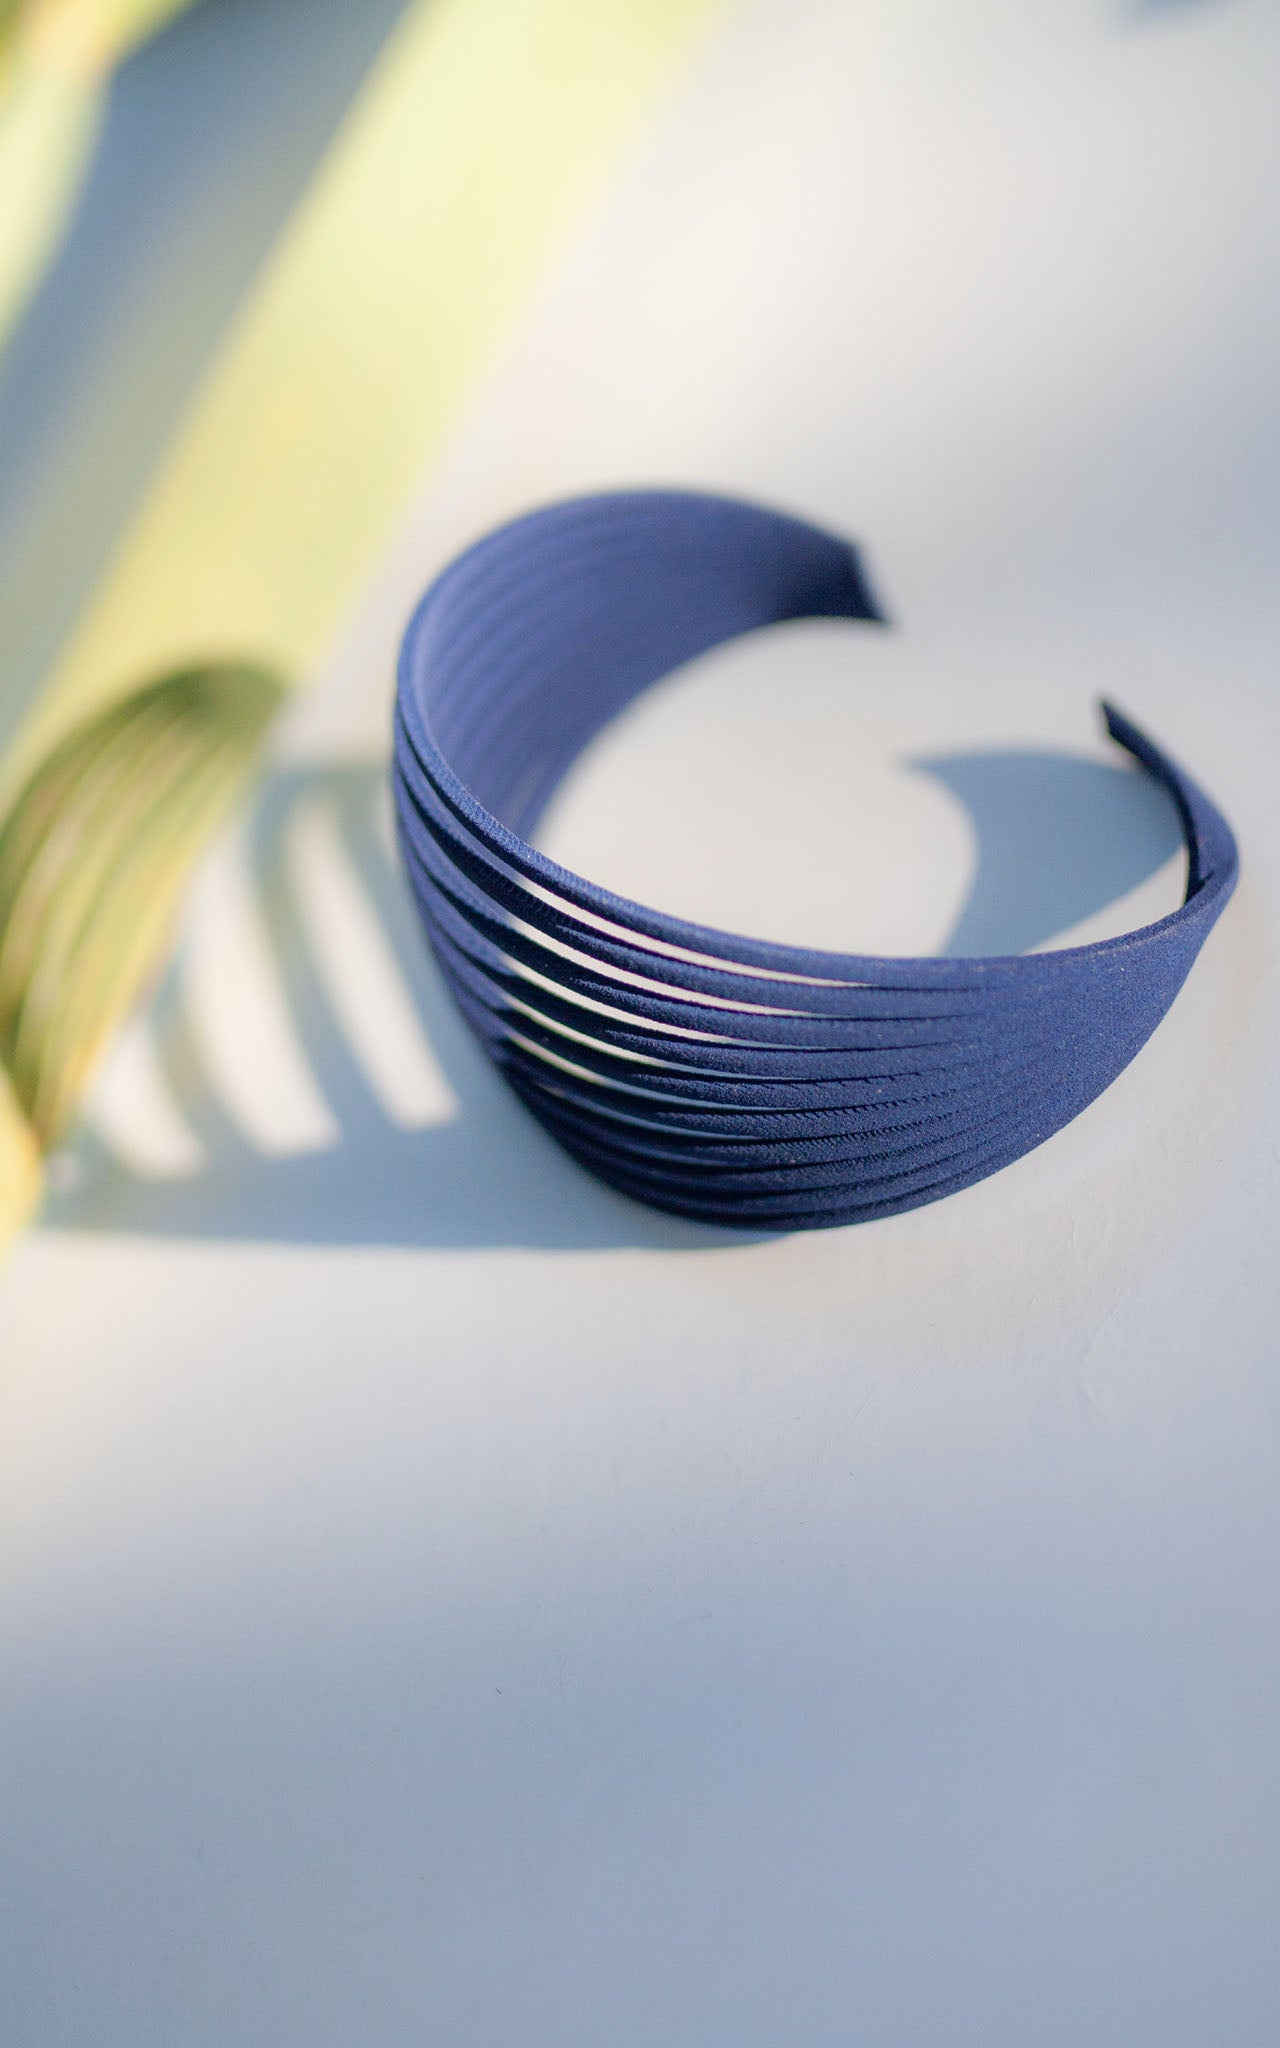 Le bracelet Lagertha couleur marine de Vox & Oz. Ce bracelet au design multi-rangs par espaces réguliers.. Saison été.